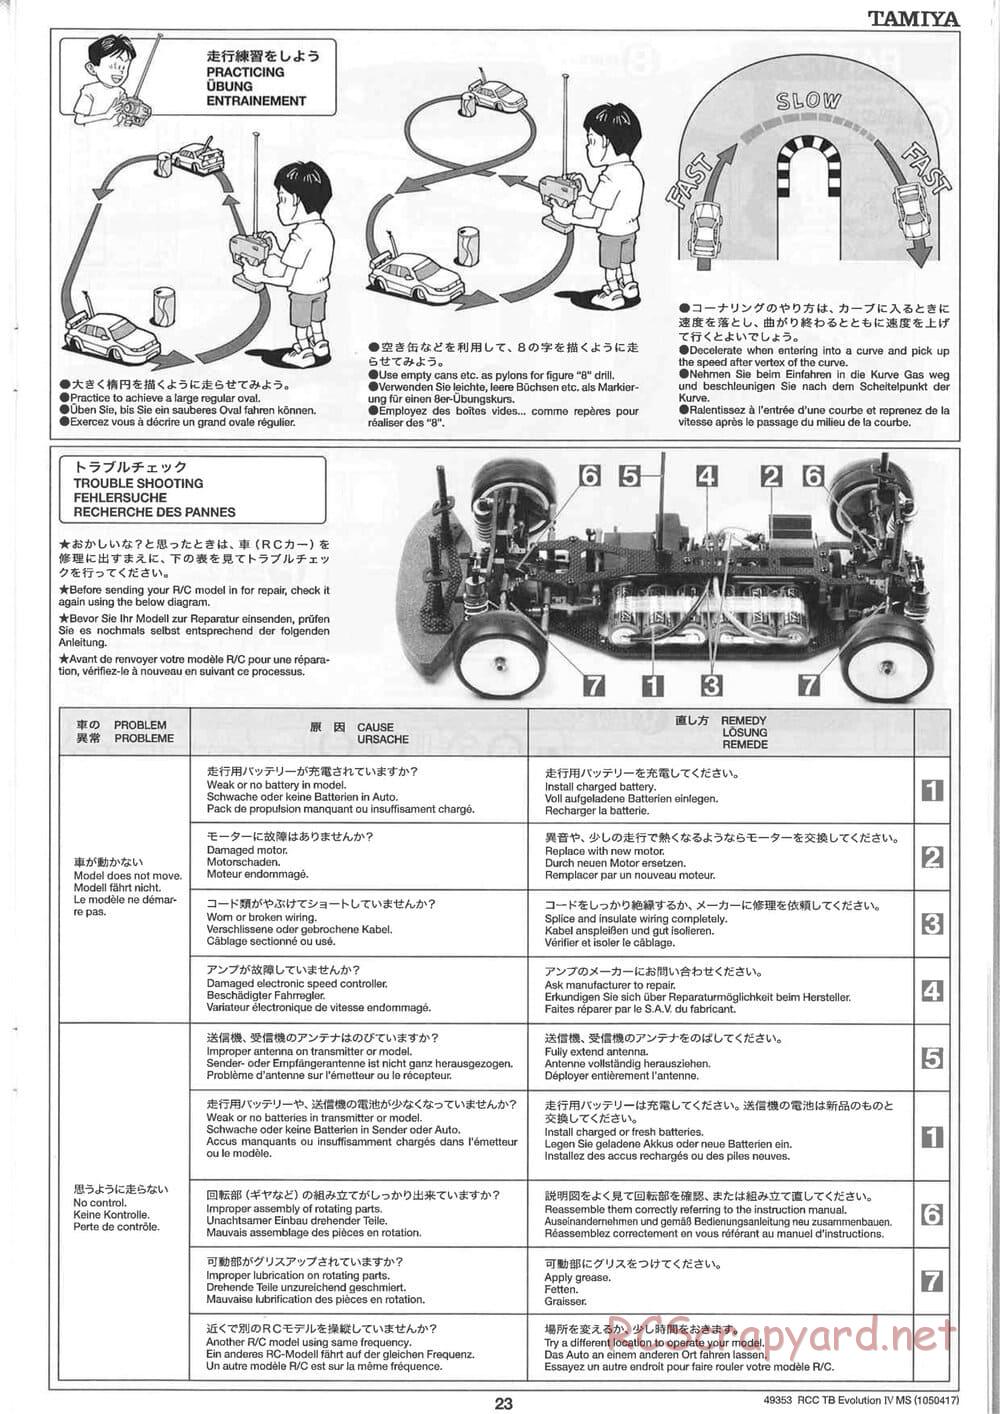 Tamiya - TB Evolution IV MS Chassis - Manual - Page 23